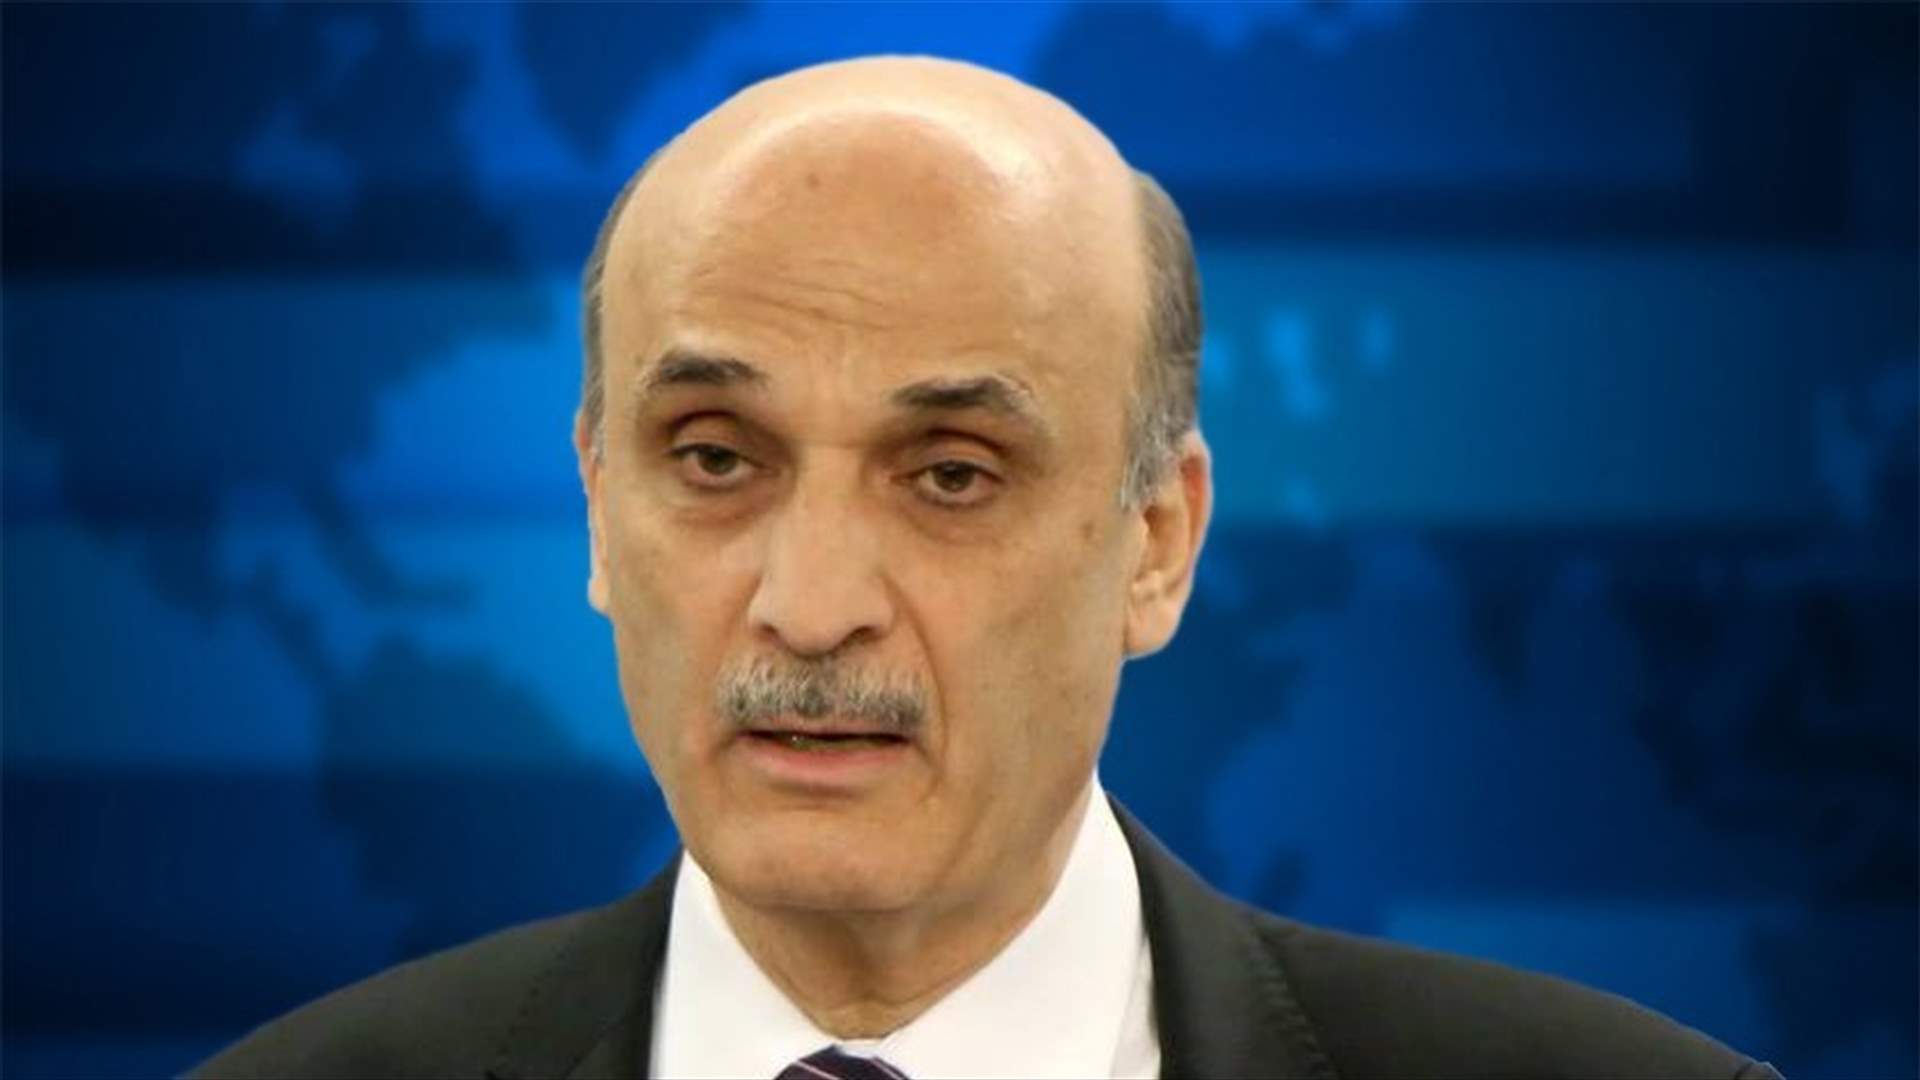 Geagea condemns Sinai attack 